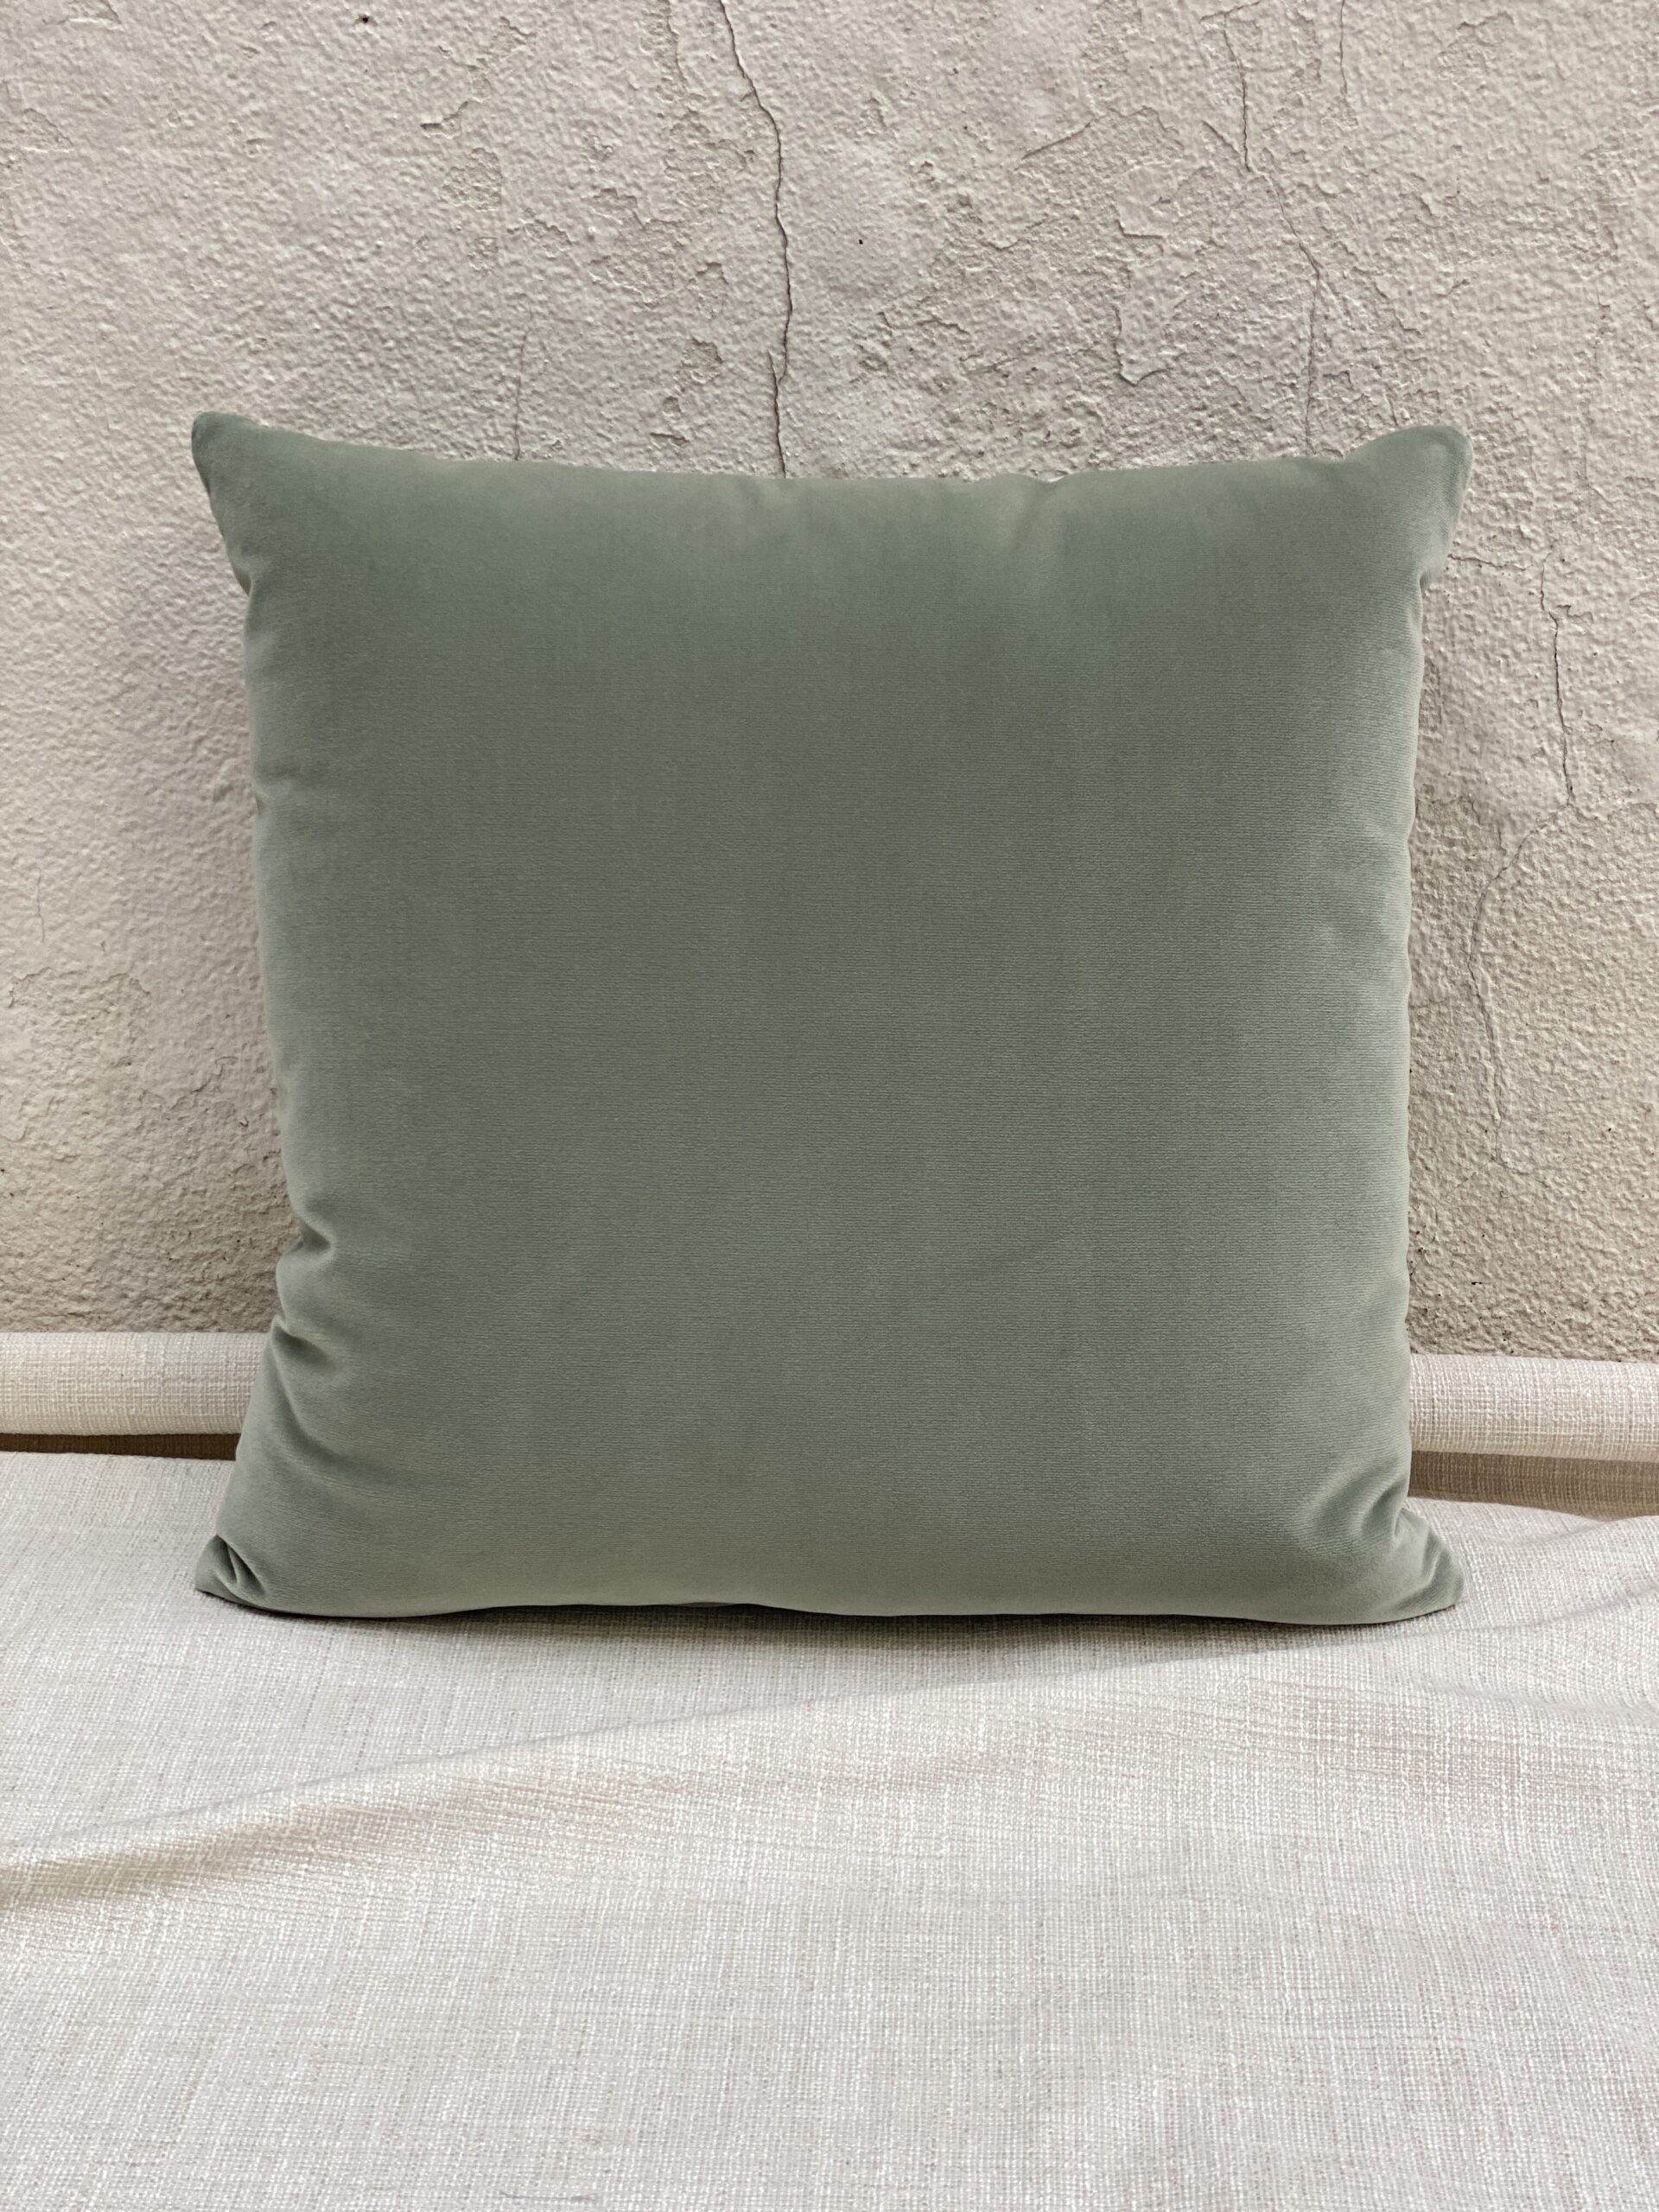 Susan Strauss Design x Donghia Pillows